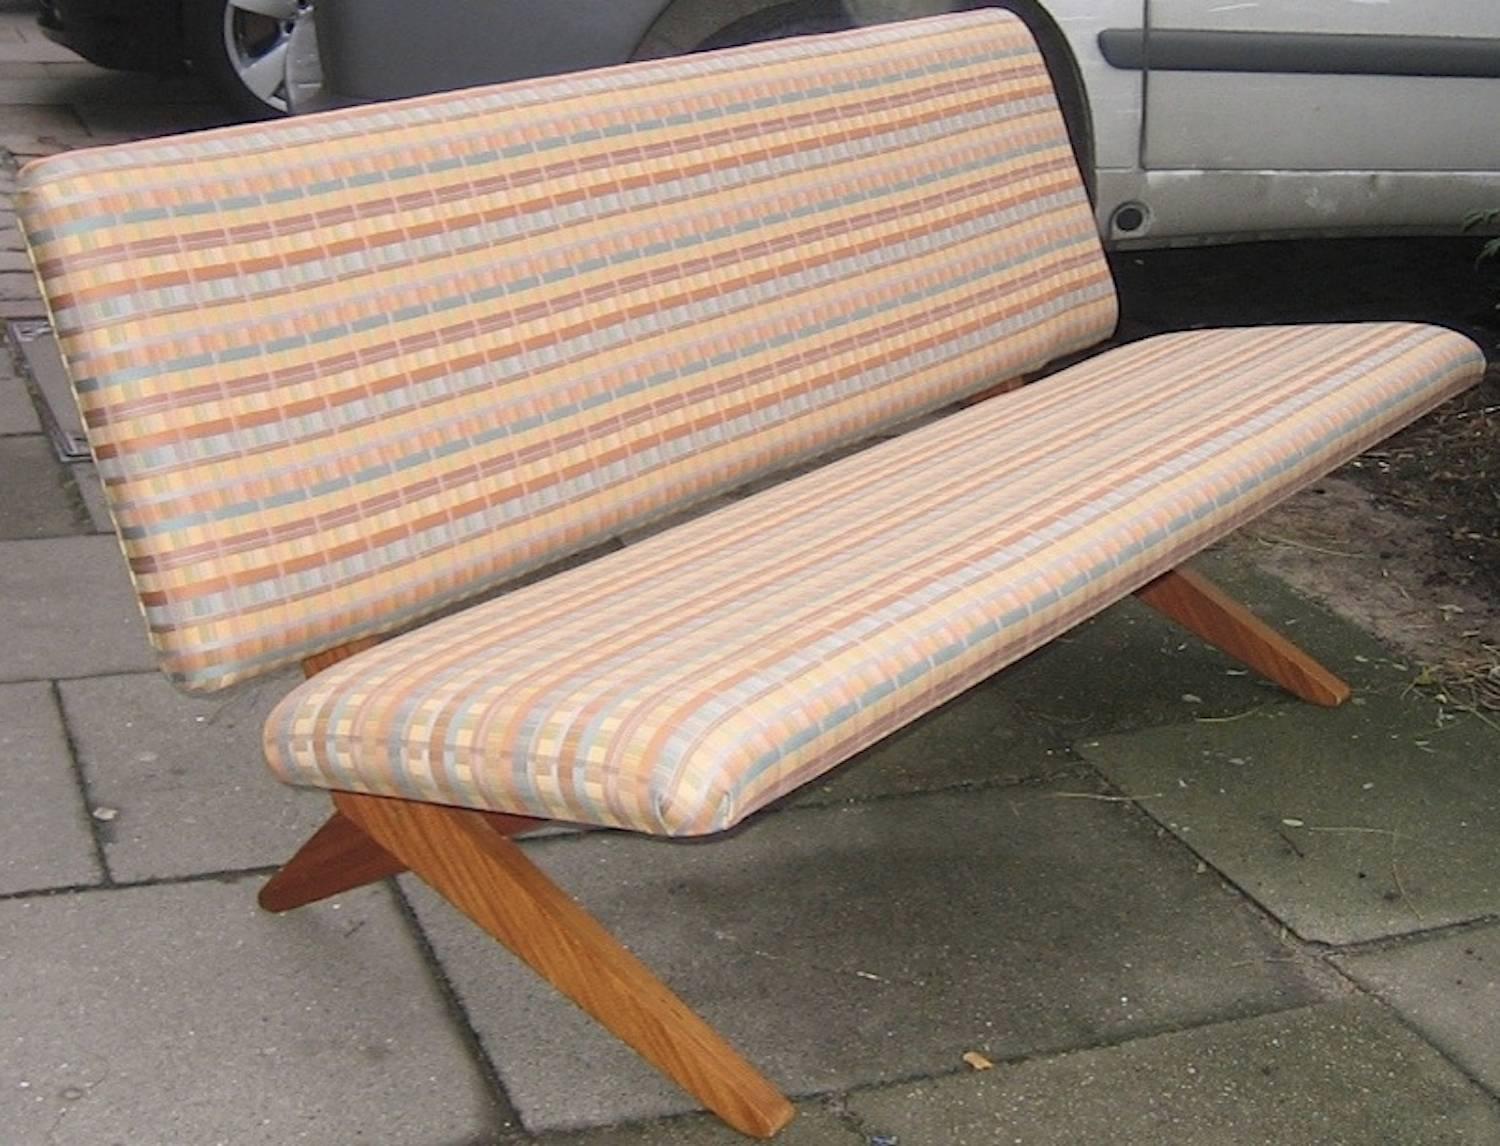 Sofabett, entworfen und hergestellt von Pastoe, um 1950. Ungewöhnliche Walnuss-Version!

MIT SITZ IN HAMBURG